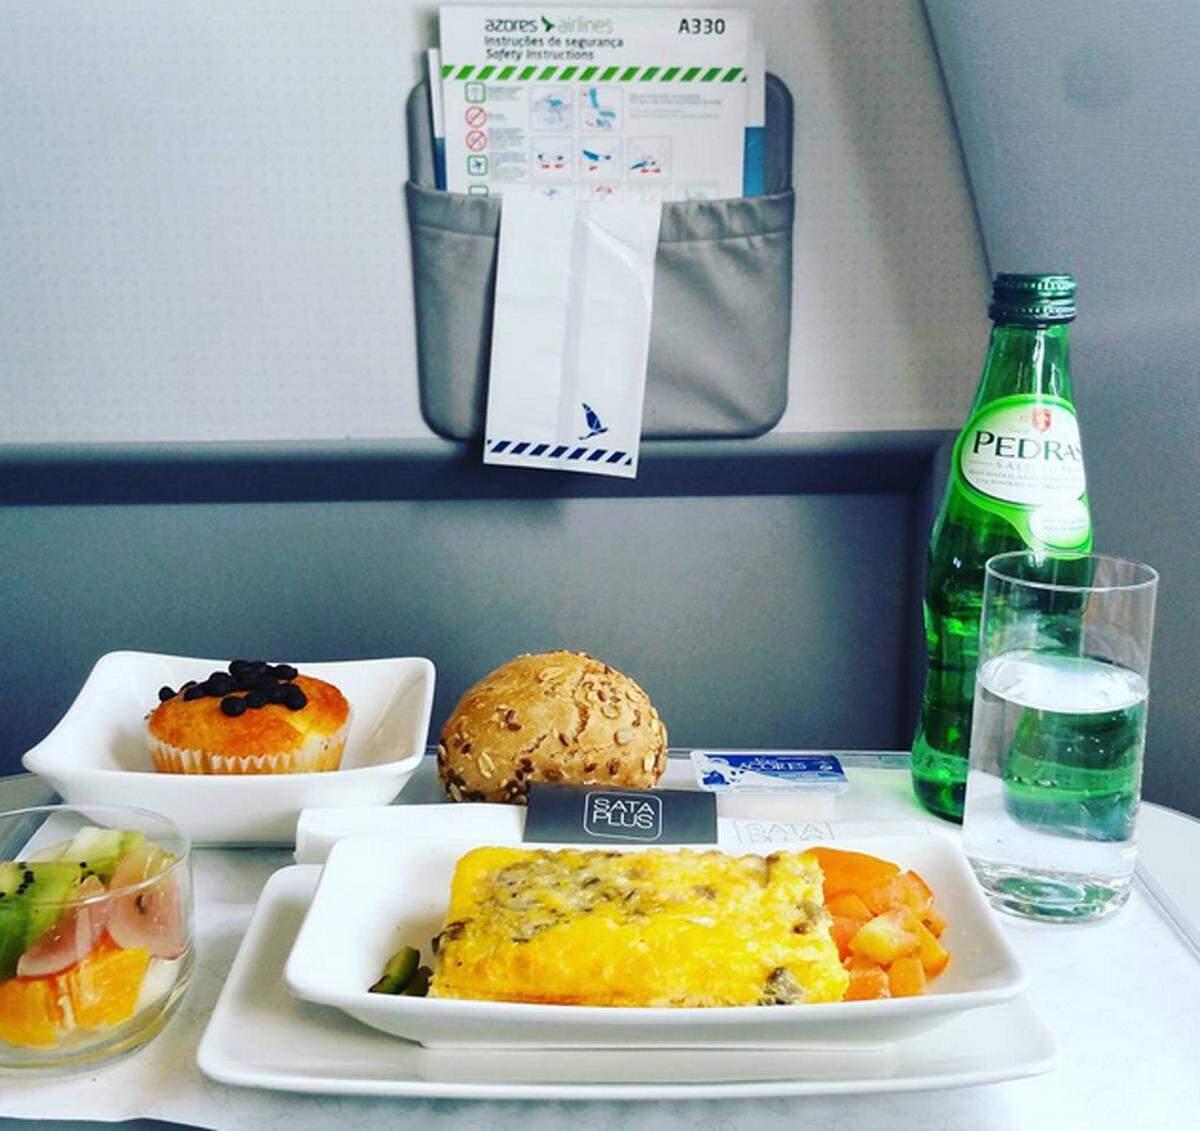 Das Frühstück in der Business Class der Azores Airlines kann sich sehen lassen: Omlette mit Käse und Pilzen, dazu frische Früchte und ein Schoko-Muffin.